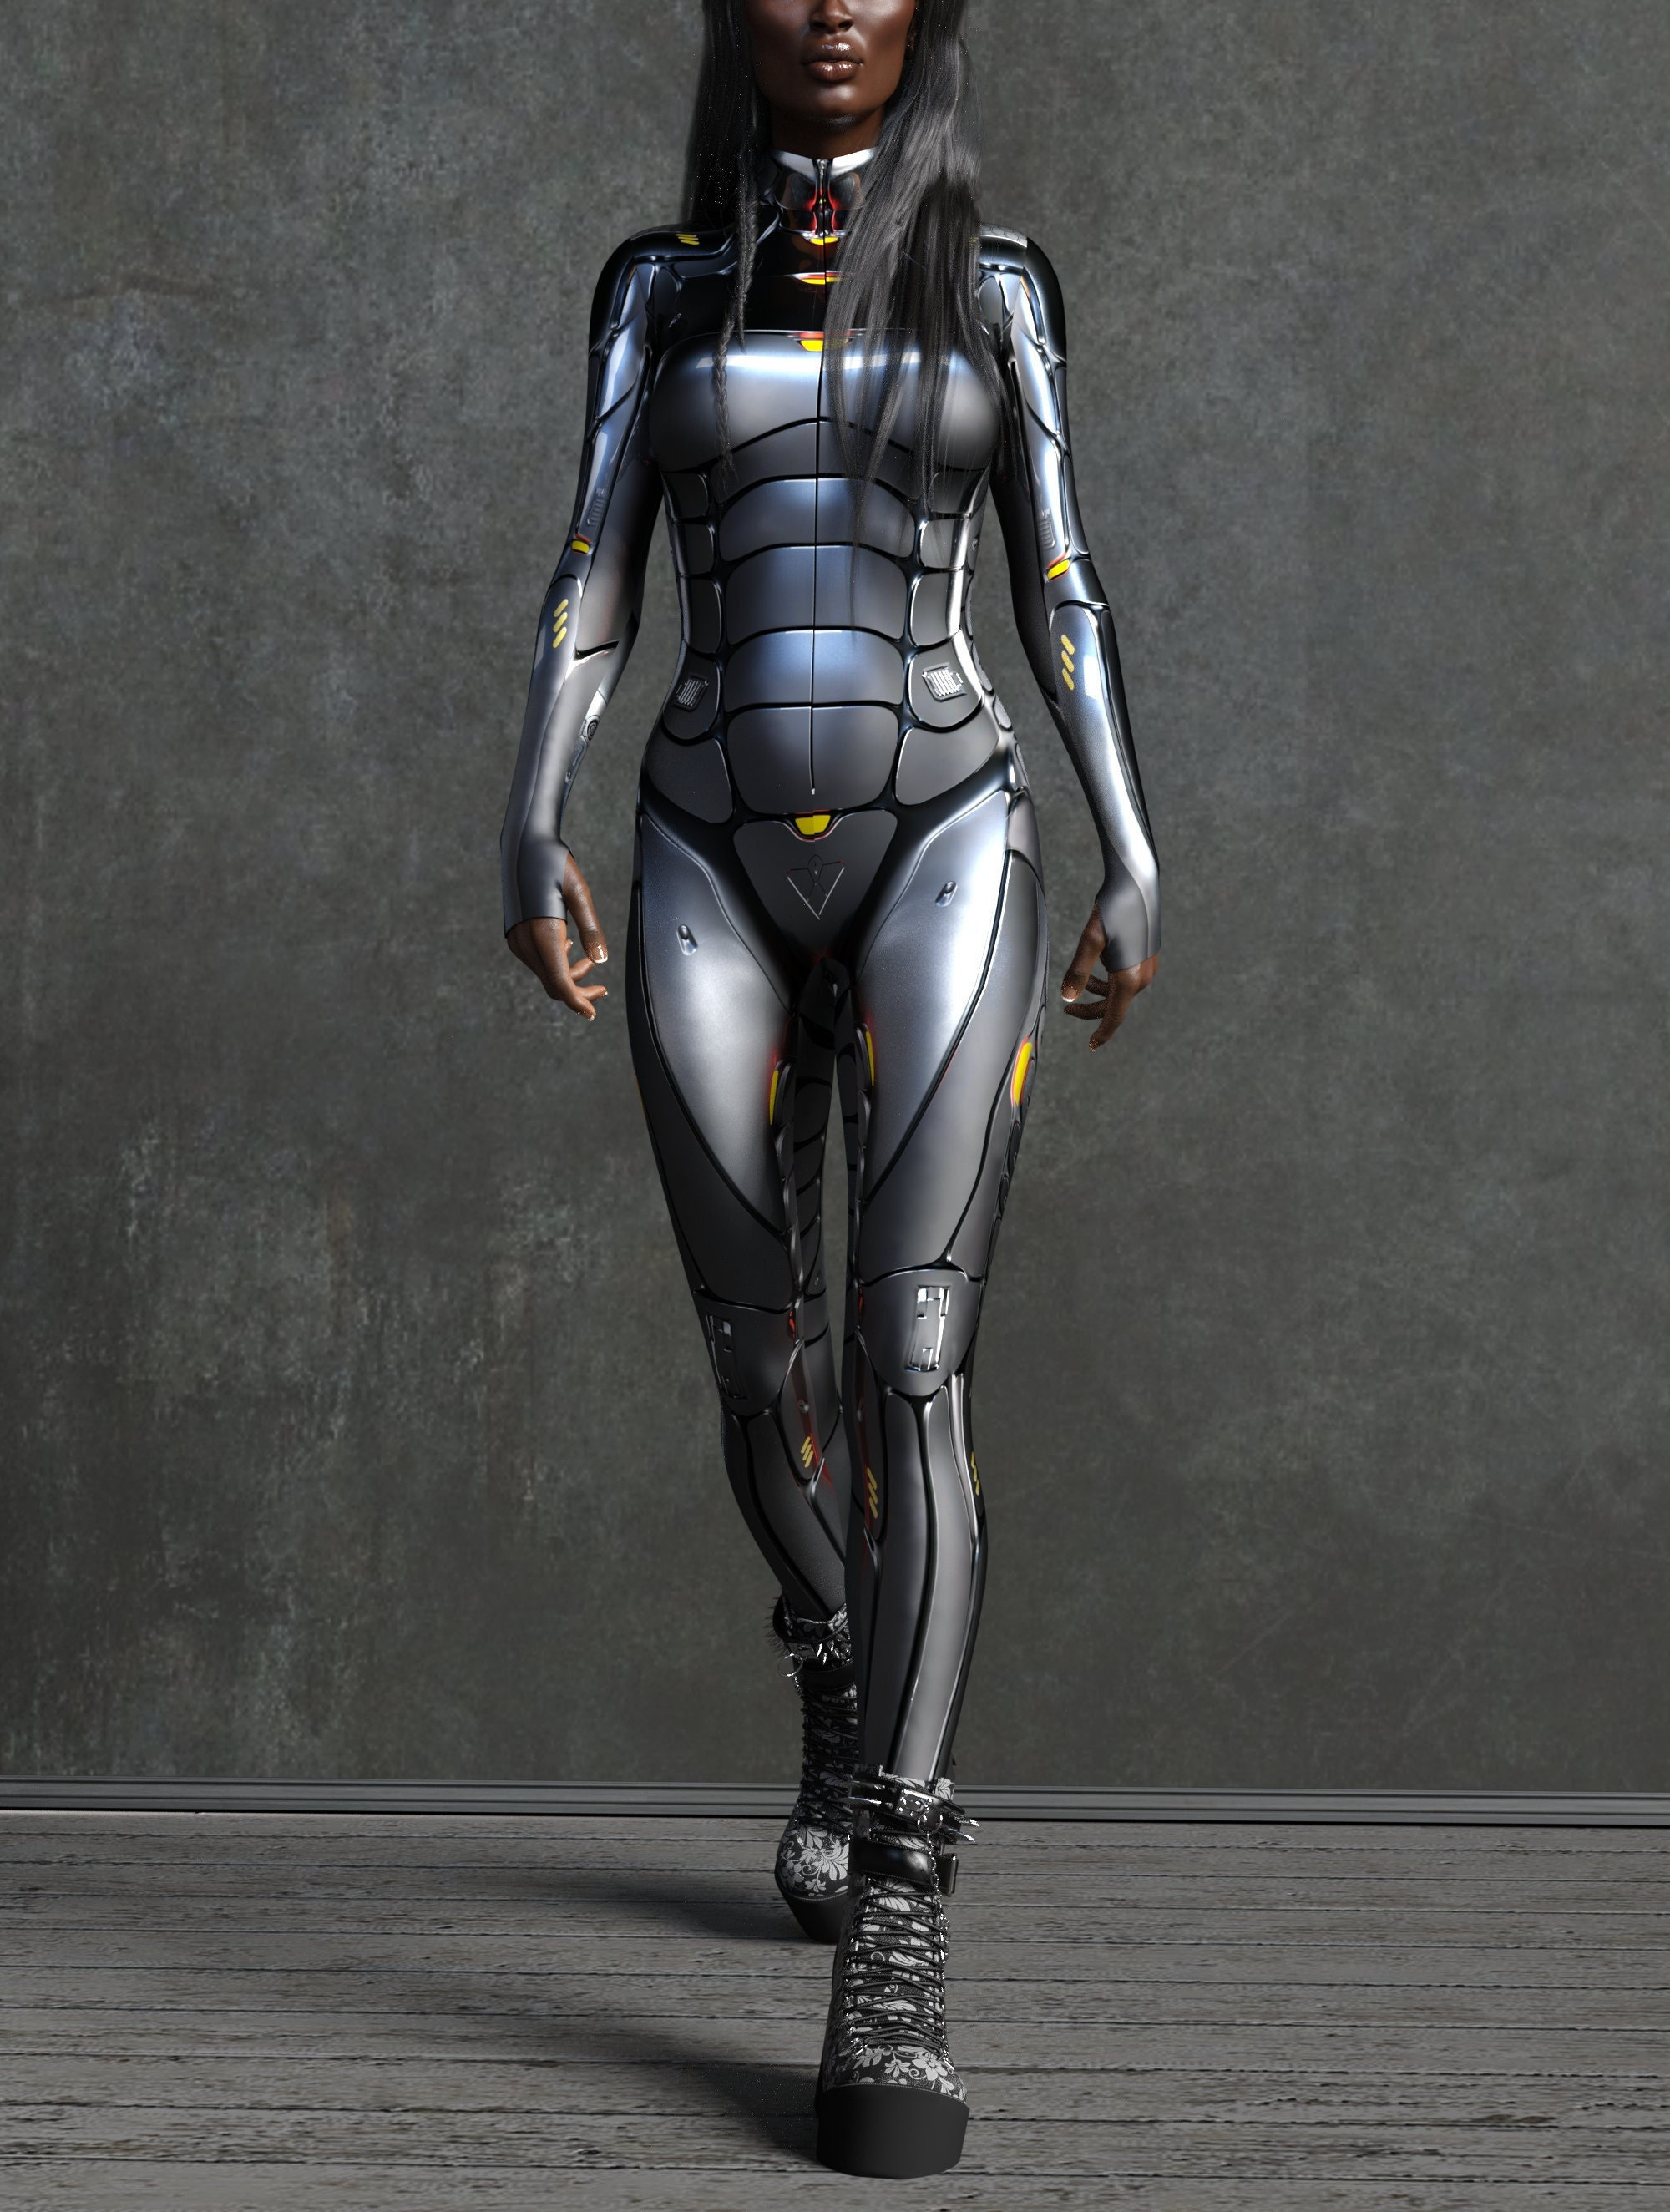 Robot Costume Women, Cyber Costumes Women, Superhero Costumes